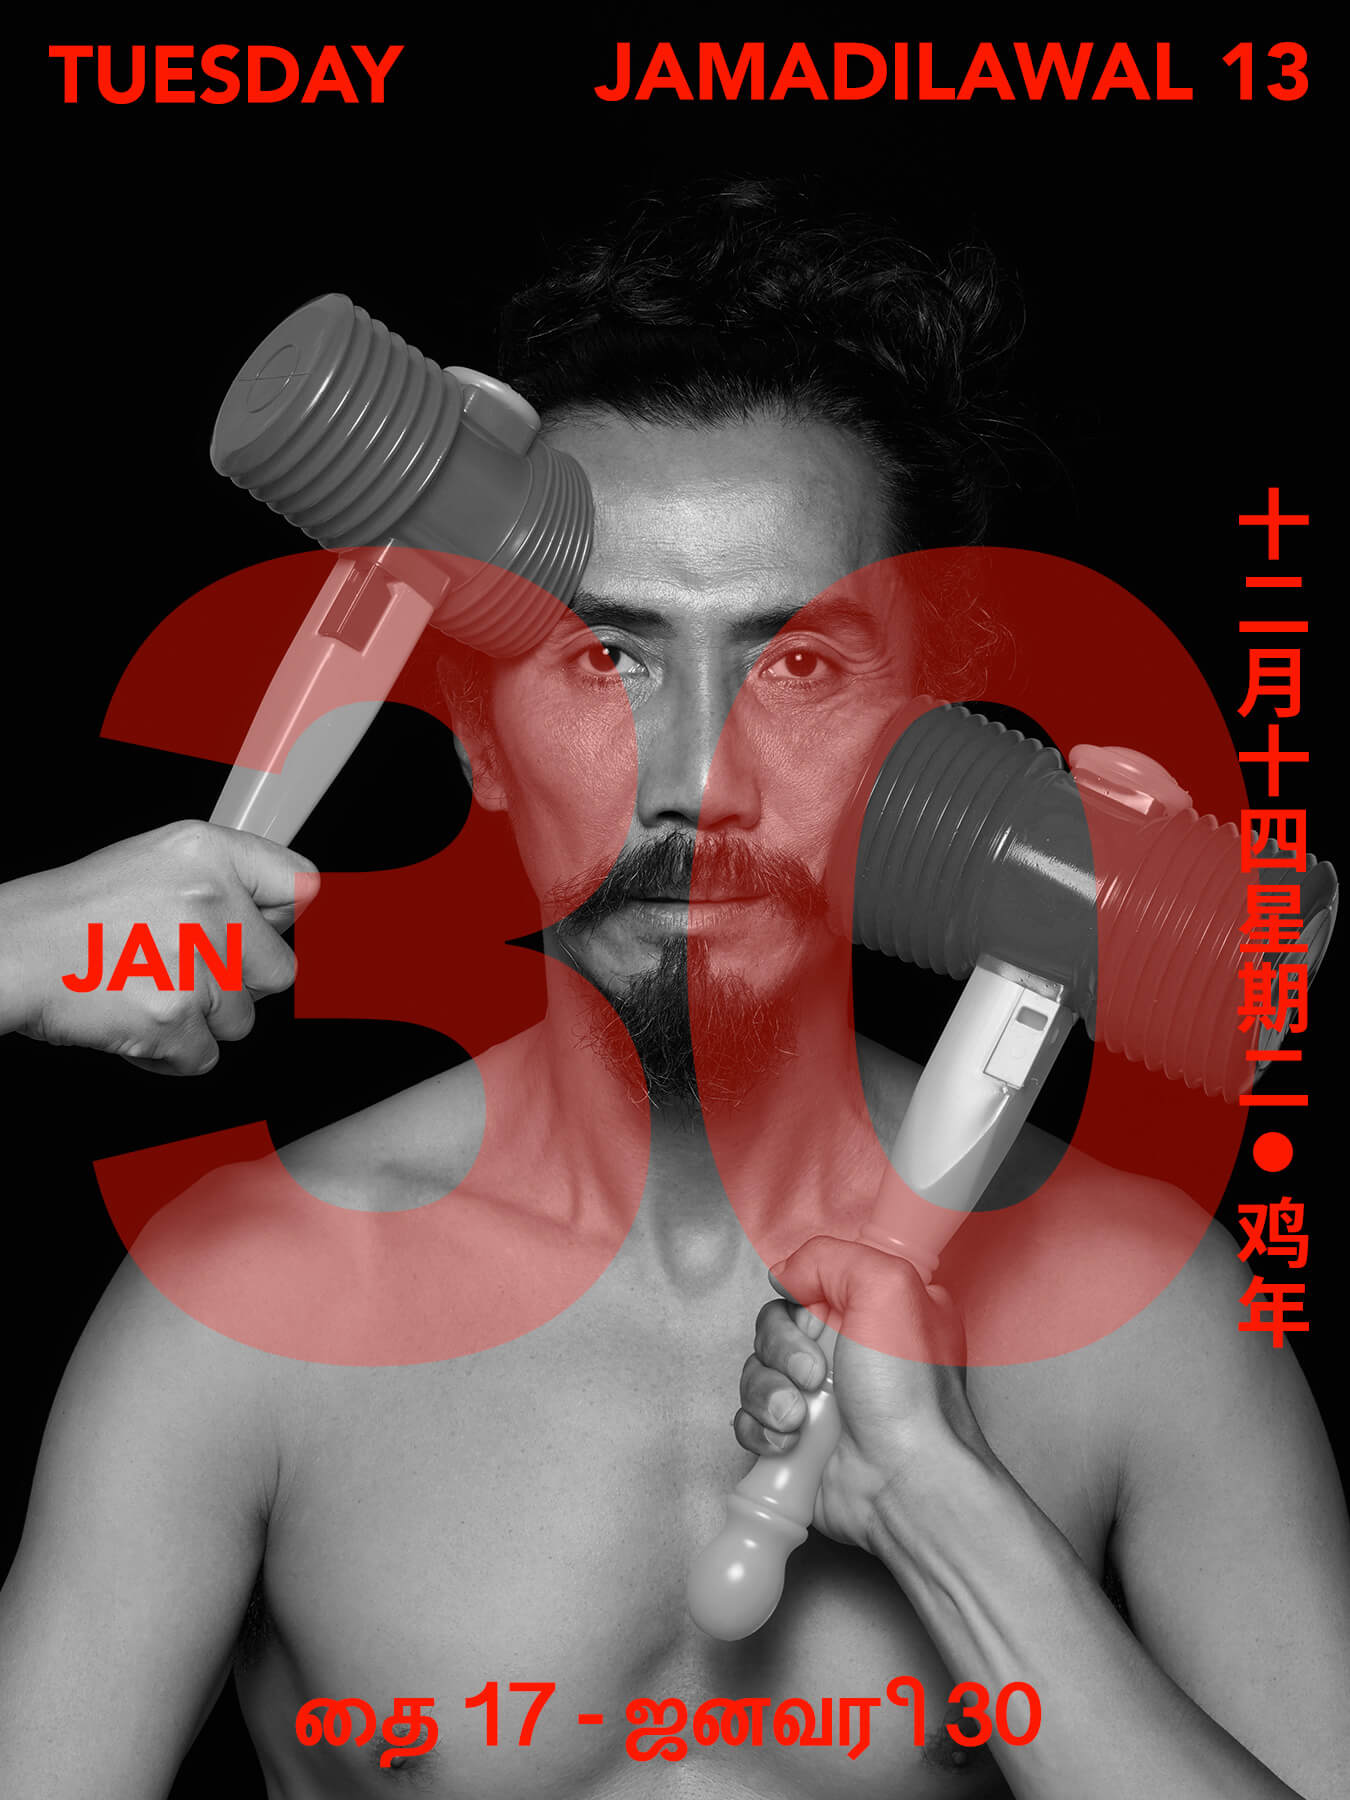 30 Jan 2018 Derong has 2 huge hammers coming at his face